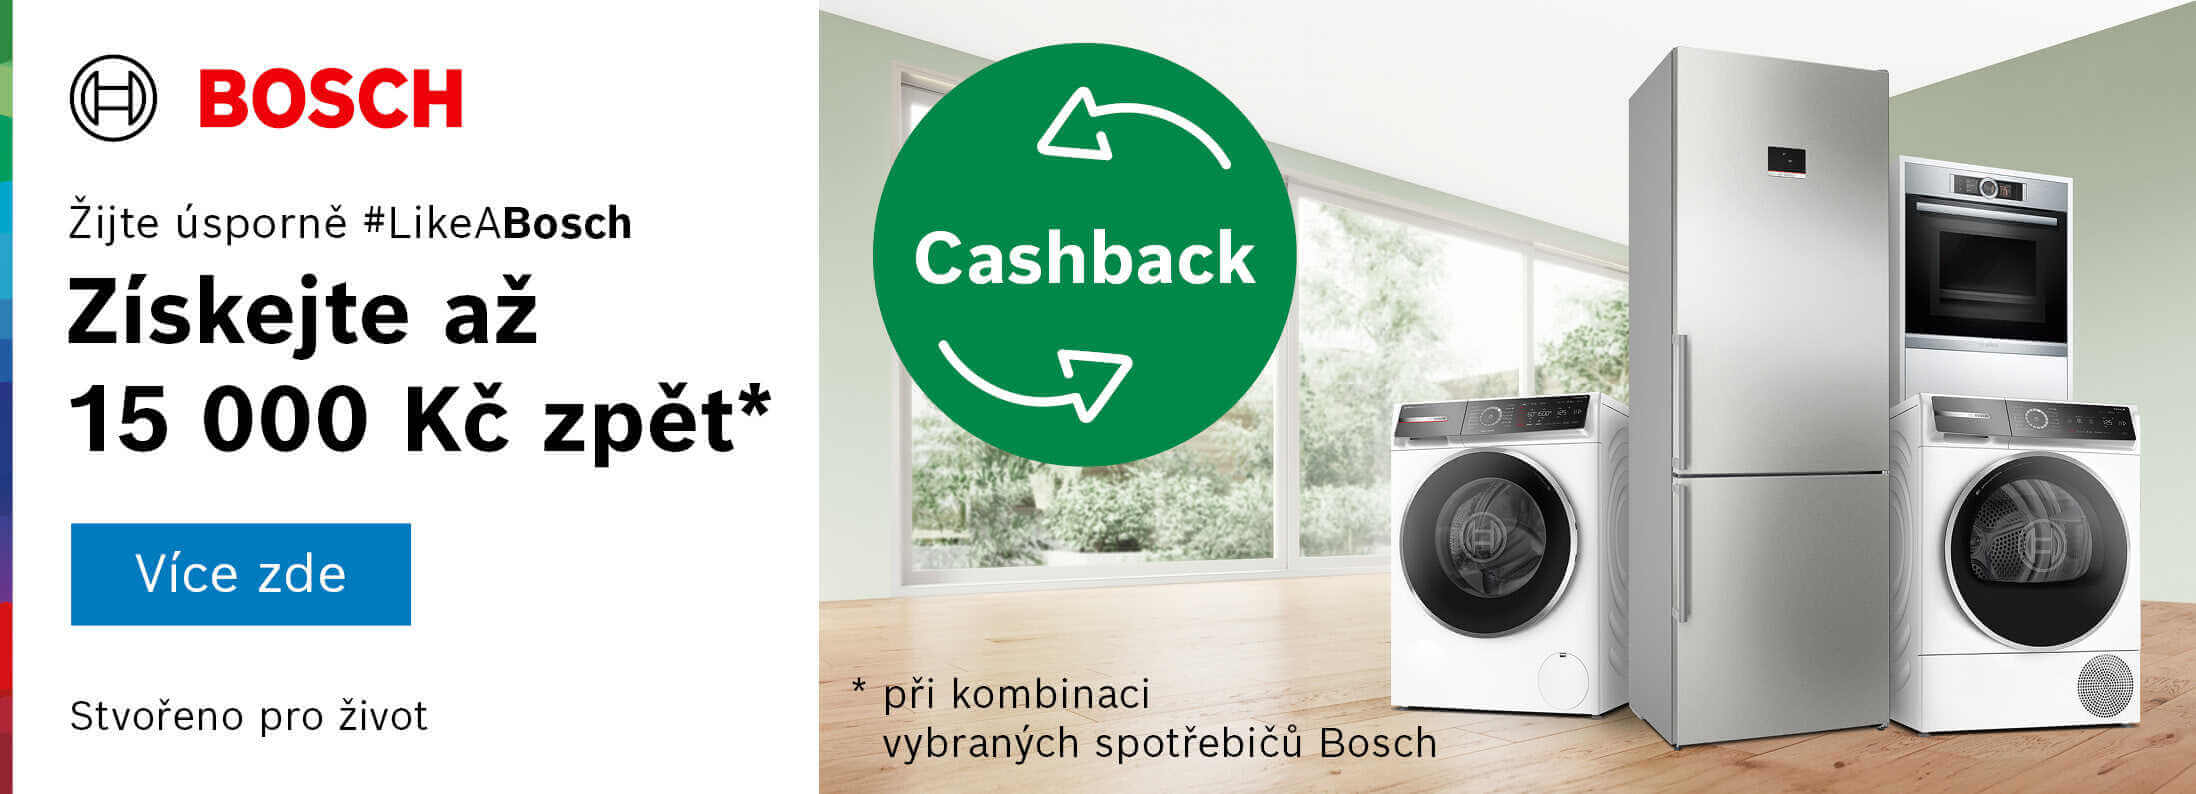 Bosch - Cashback získejte až 15 000 Kč zpět